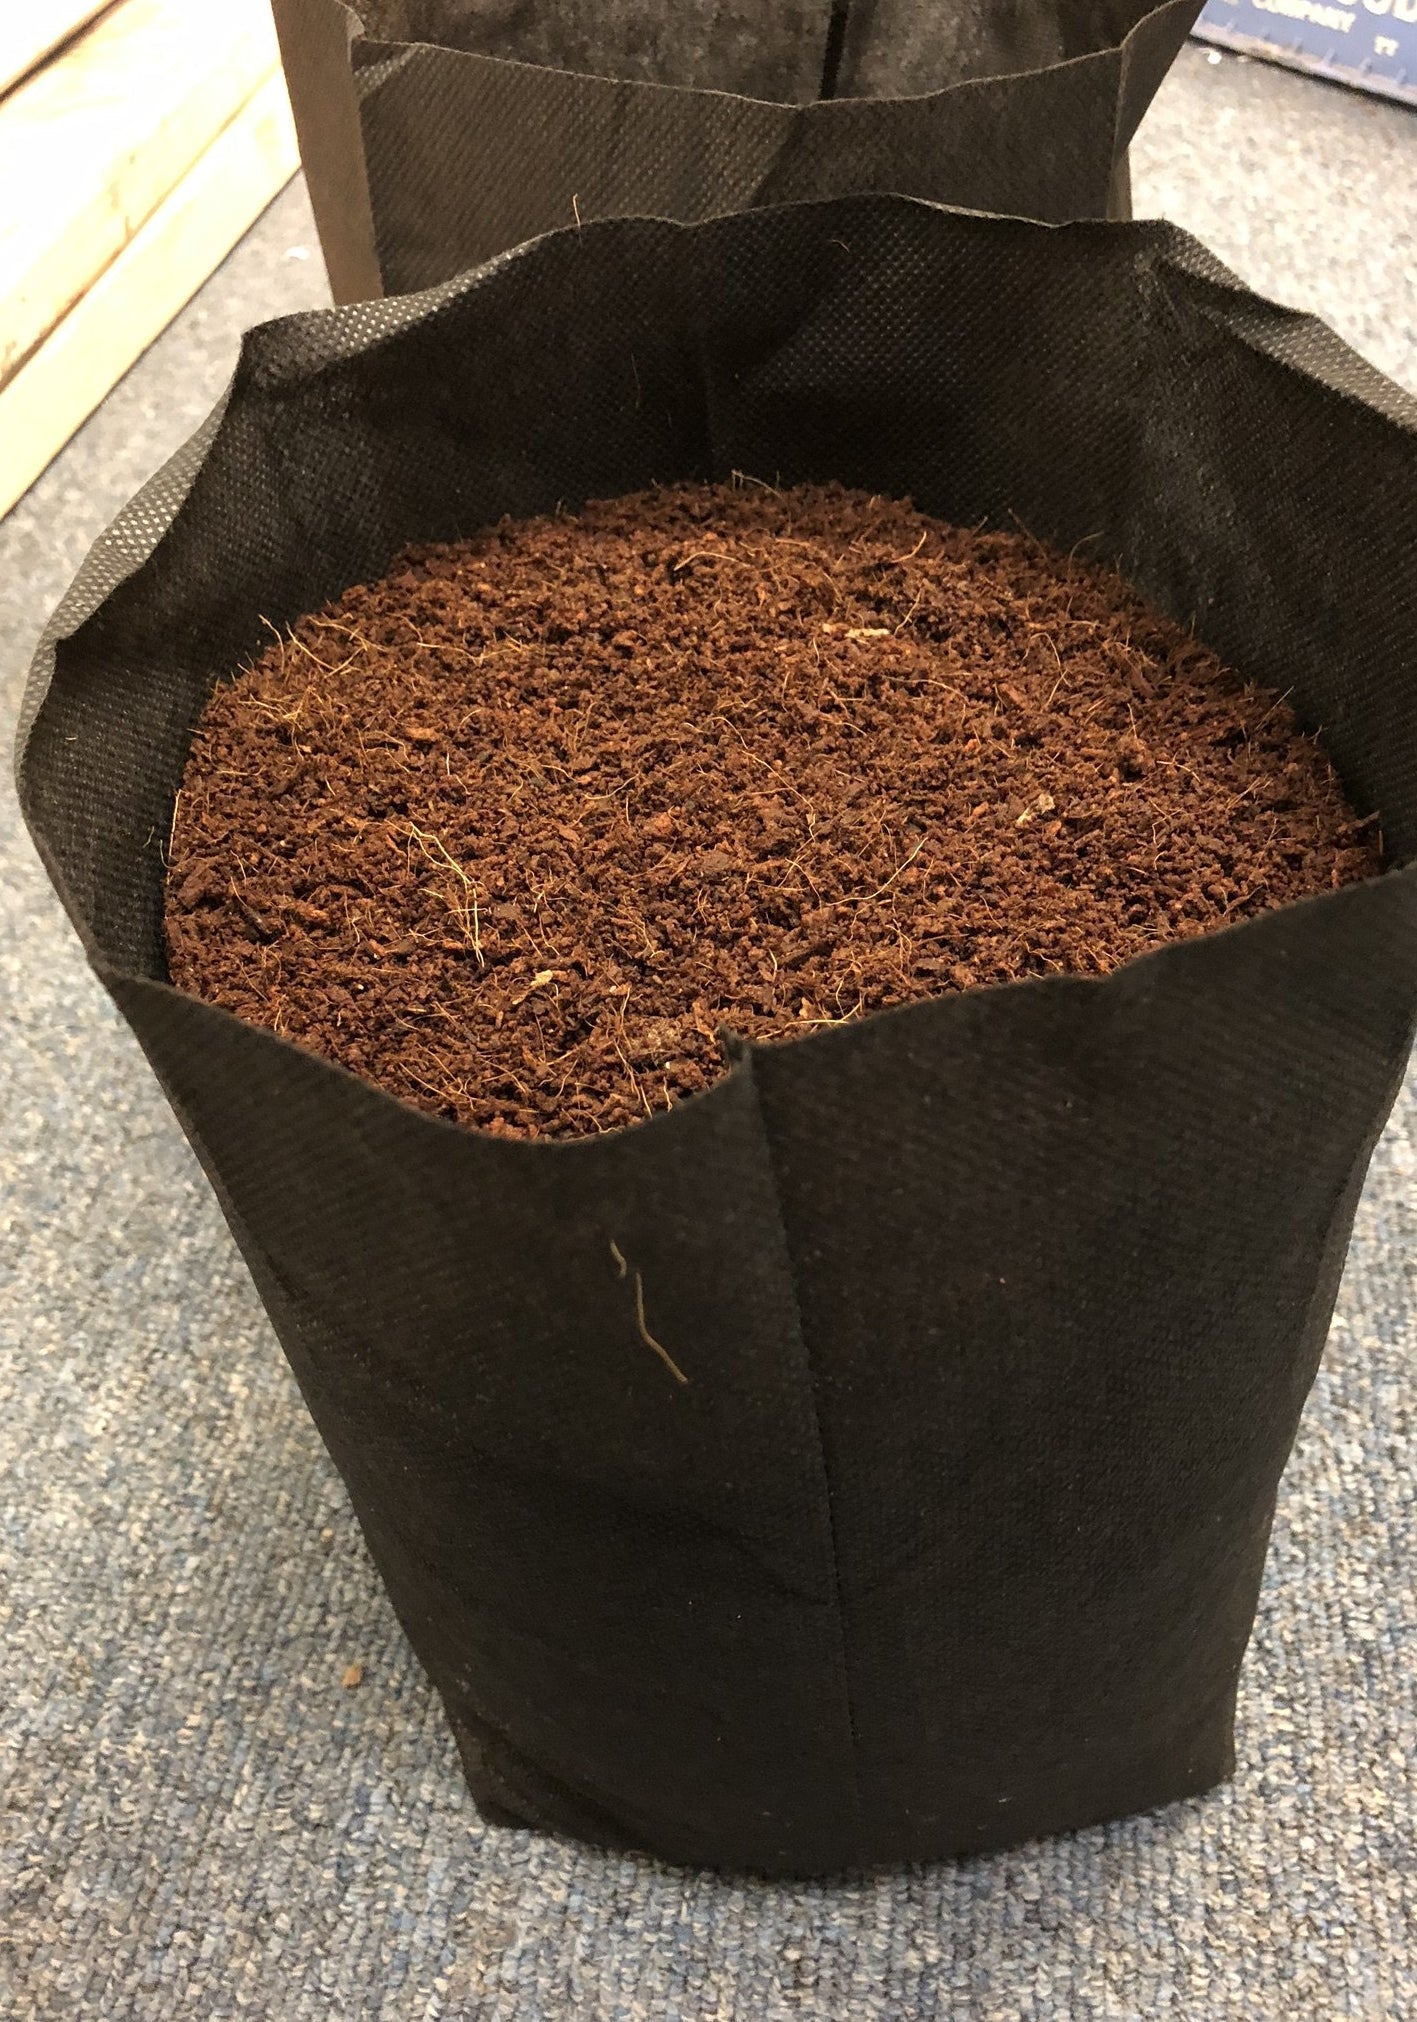 GroEzy™ 2.5 Gallon Expandable Pot